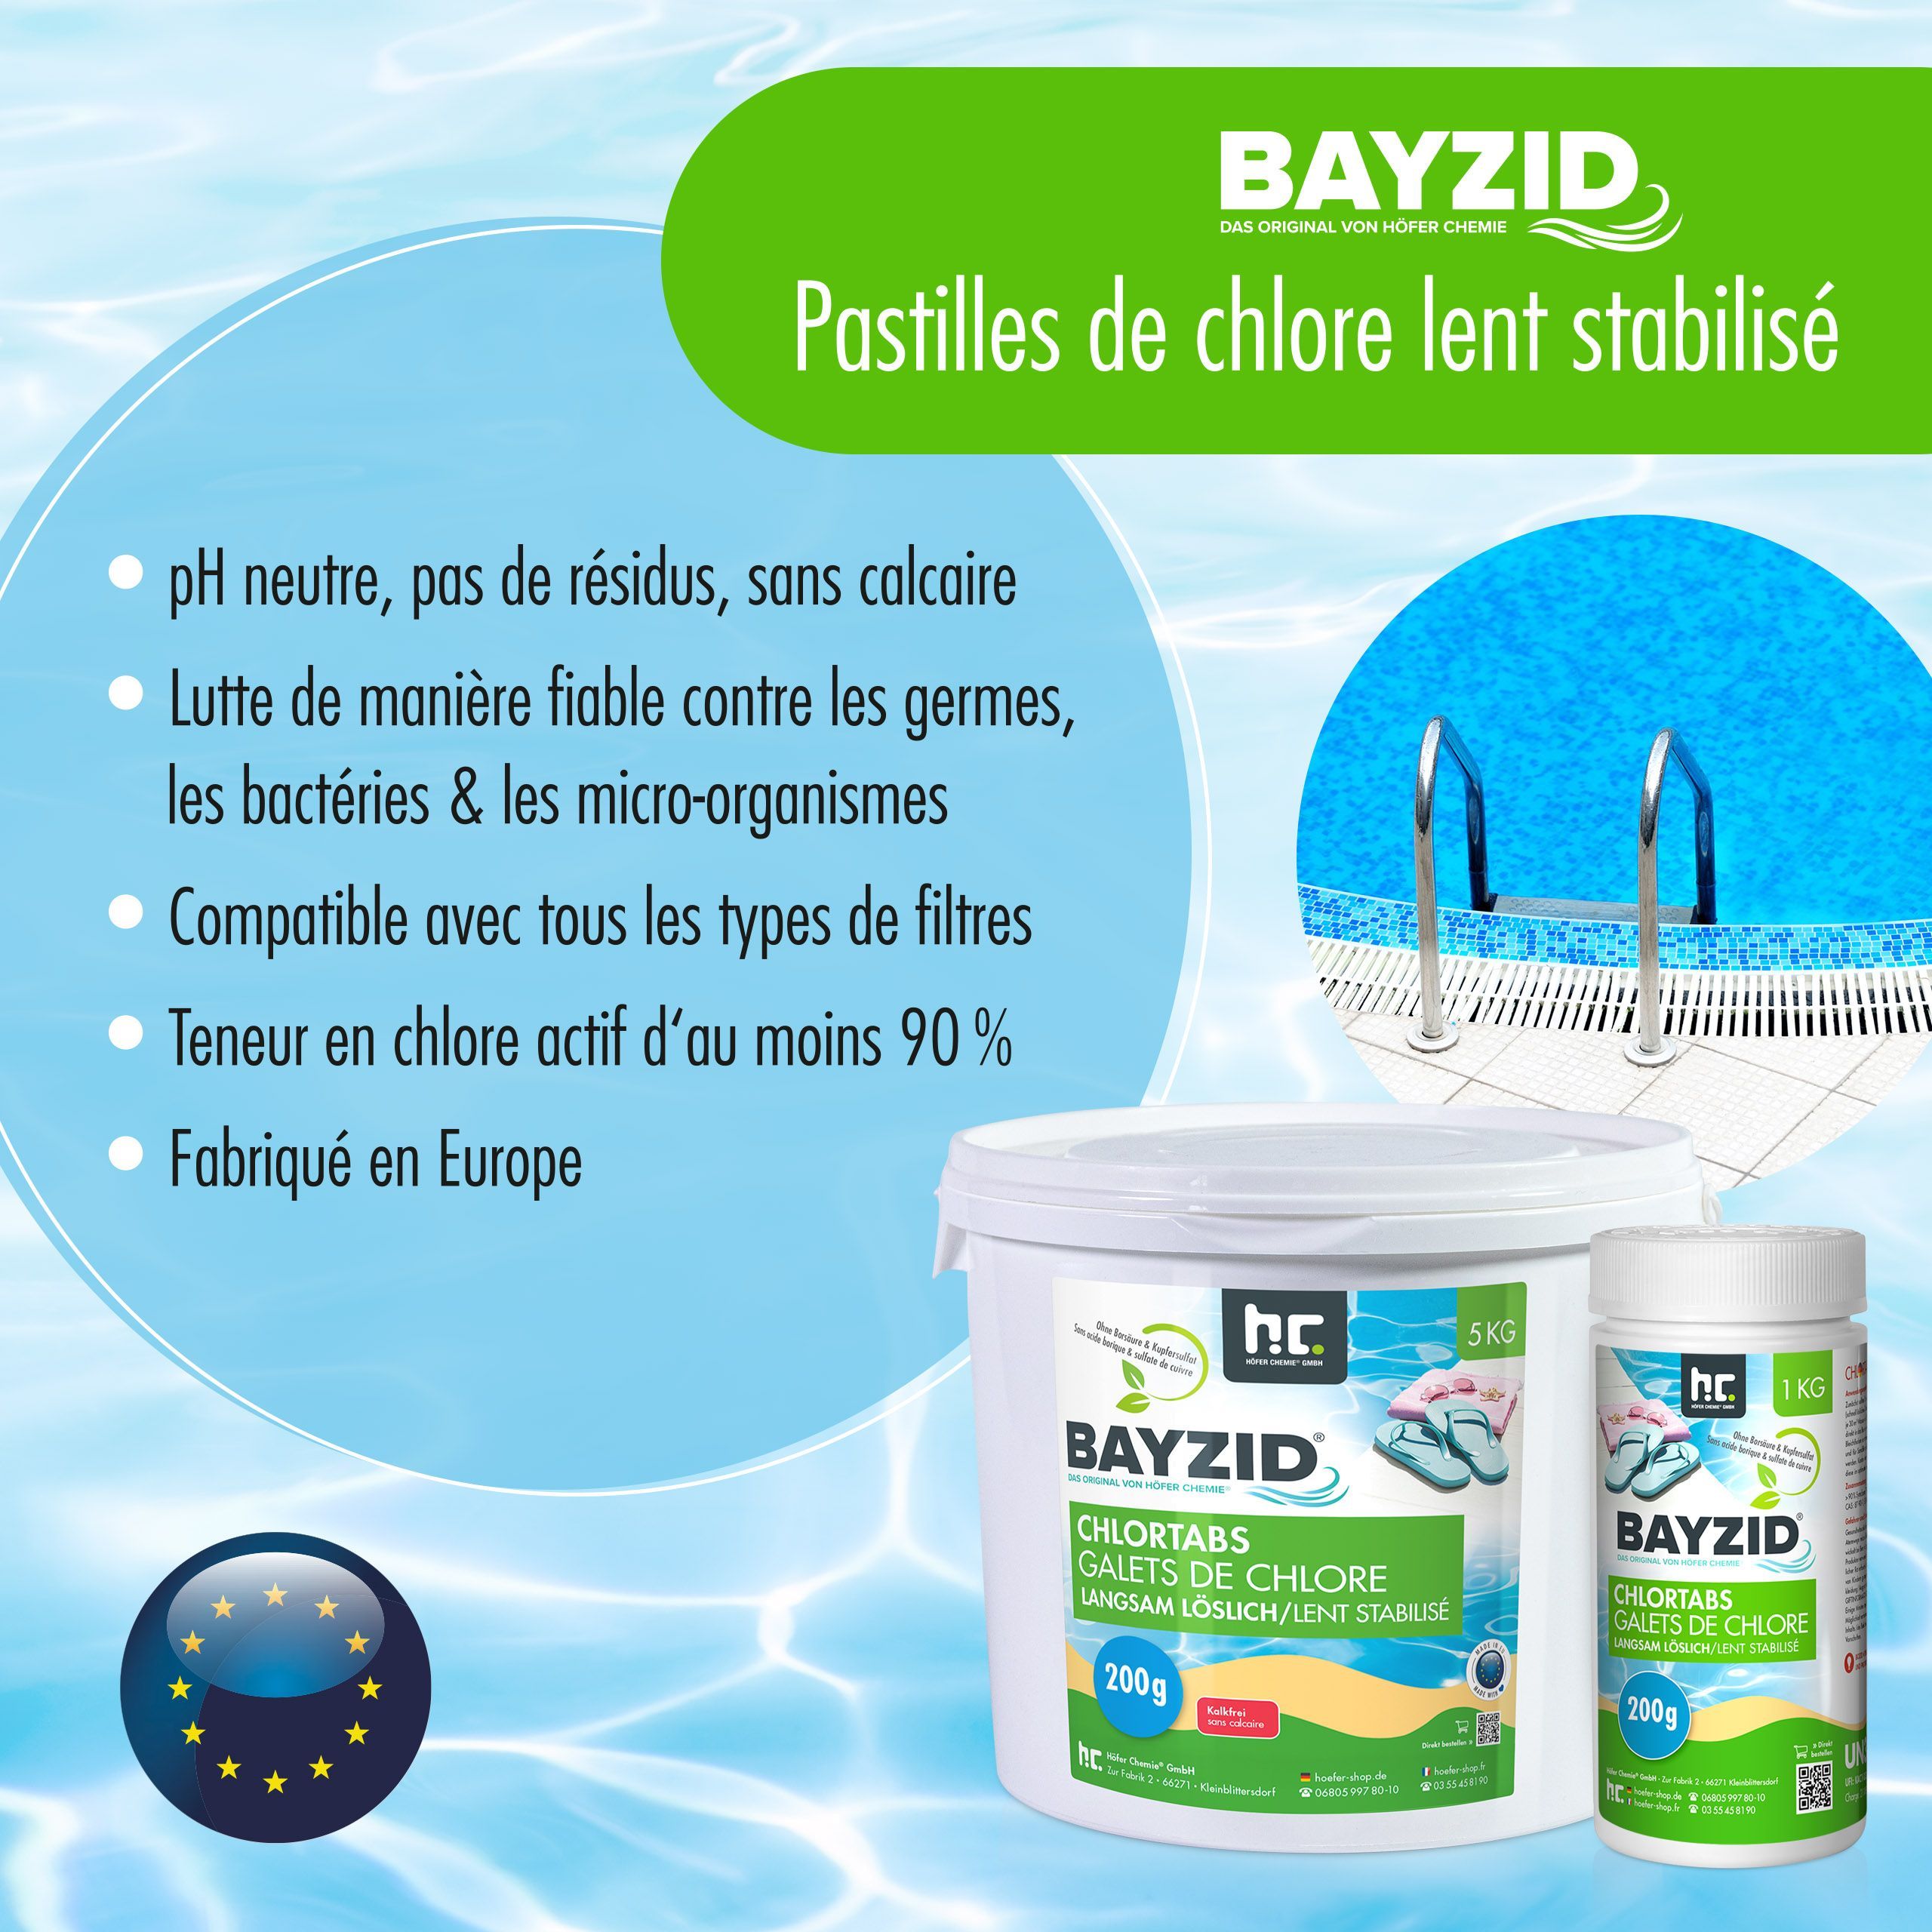 5 kg BAYZID® Chlortabs 200g langsam löslich